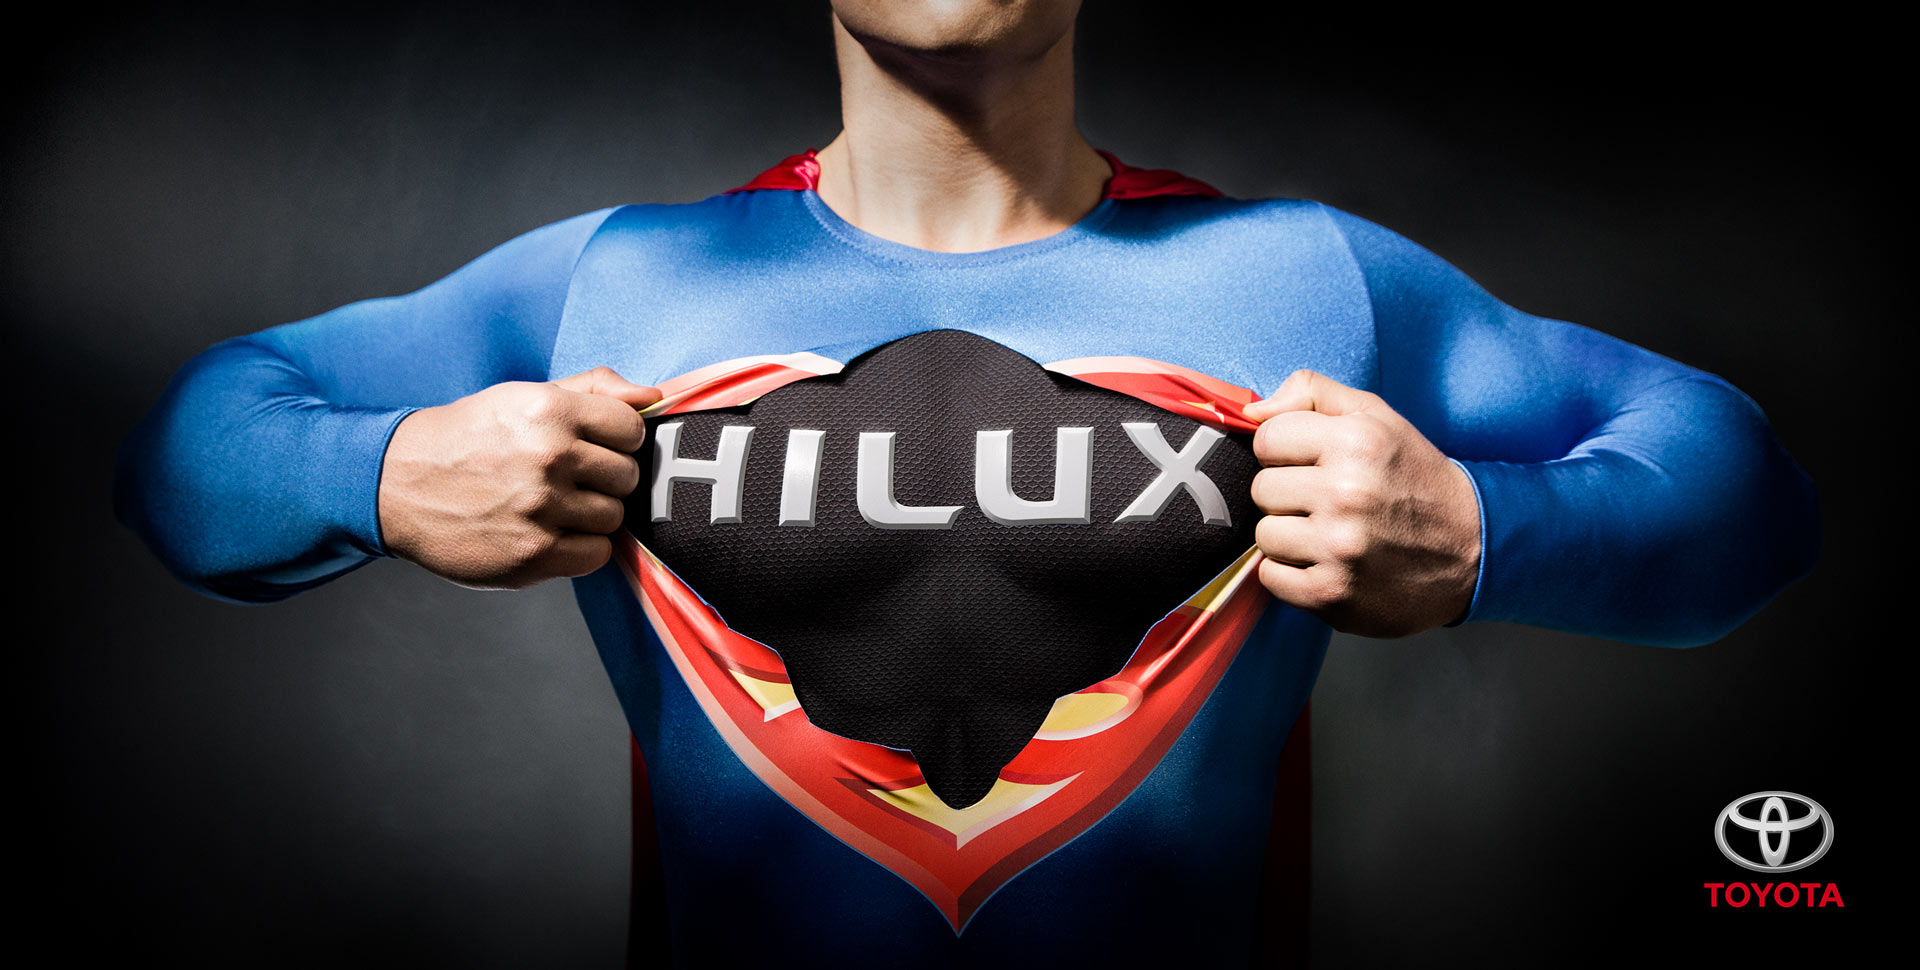 Hilux-Superman_1920x970